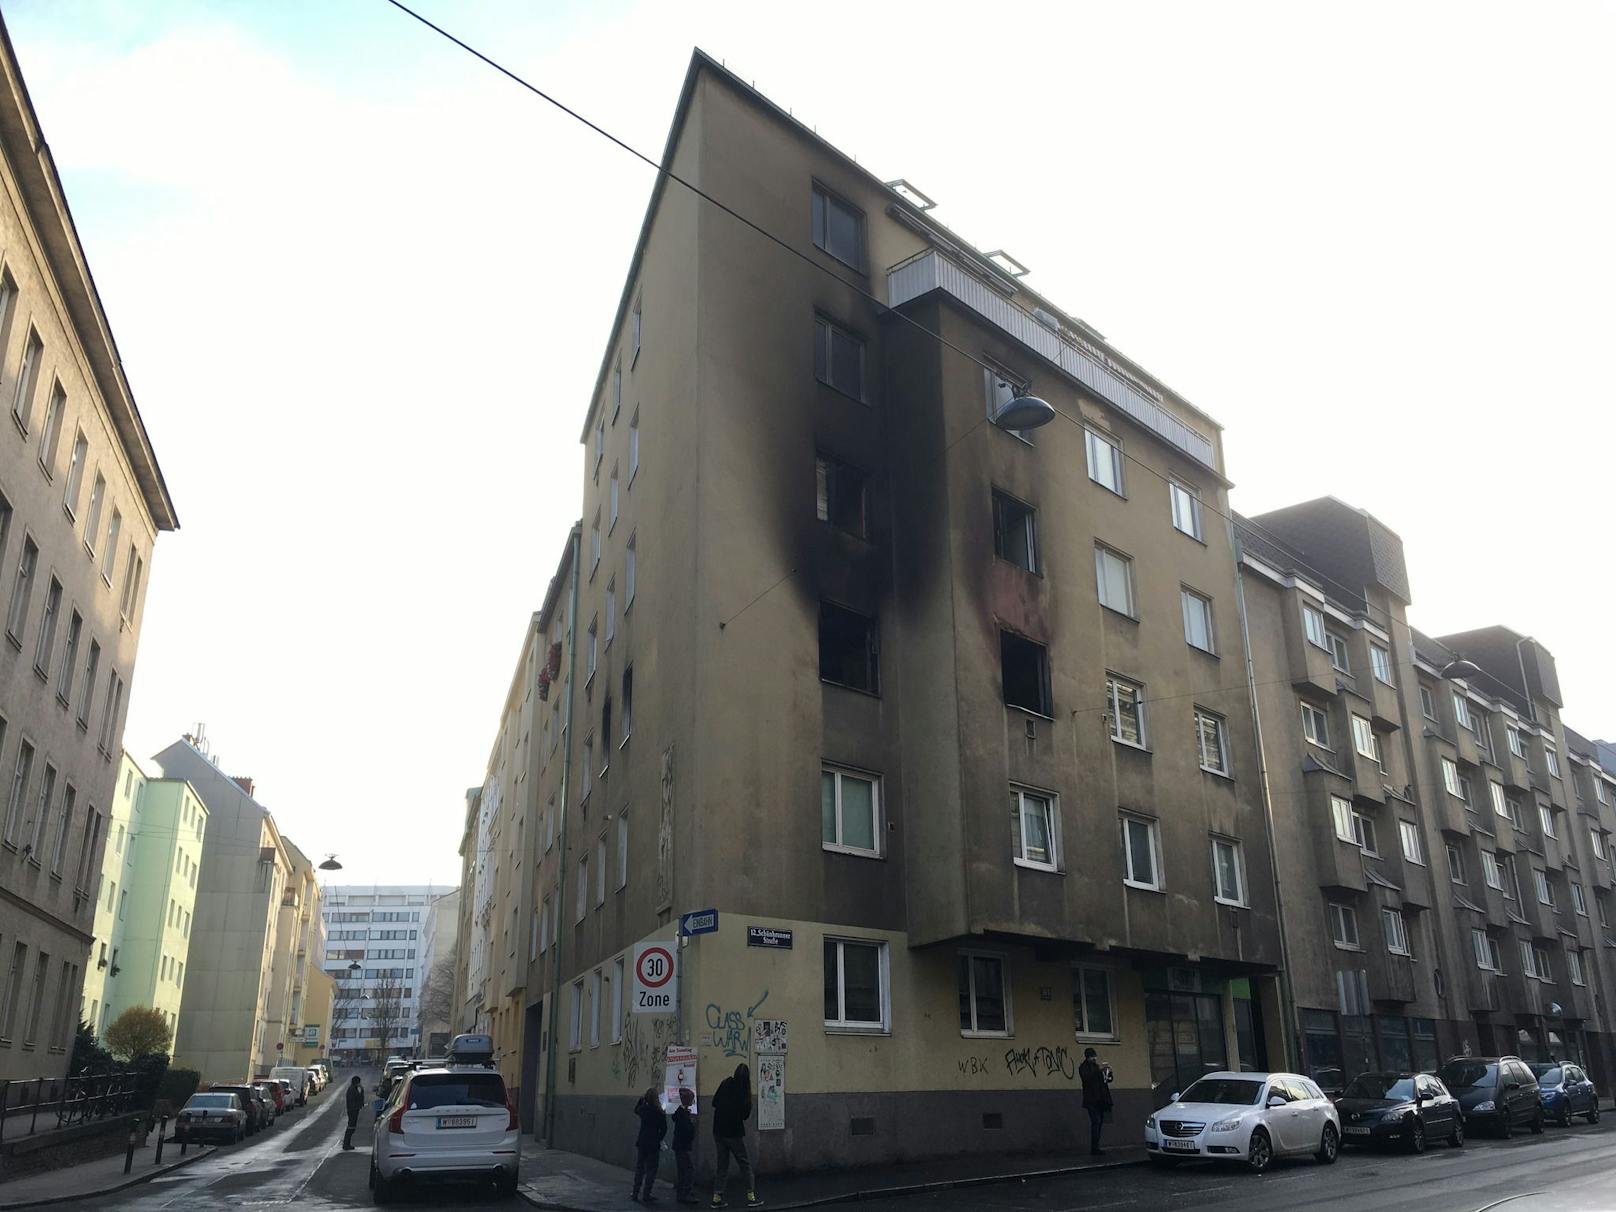 Samstagmittag brannte eine Wohnung in Wien-Meidling lichterloh. Bei dem Feuer kam eine Person ums Leben.